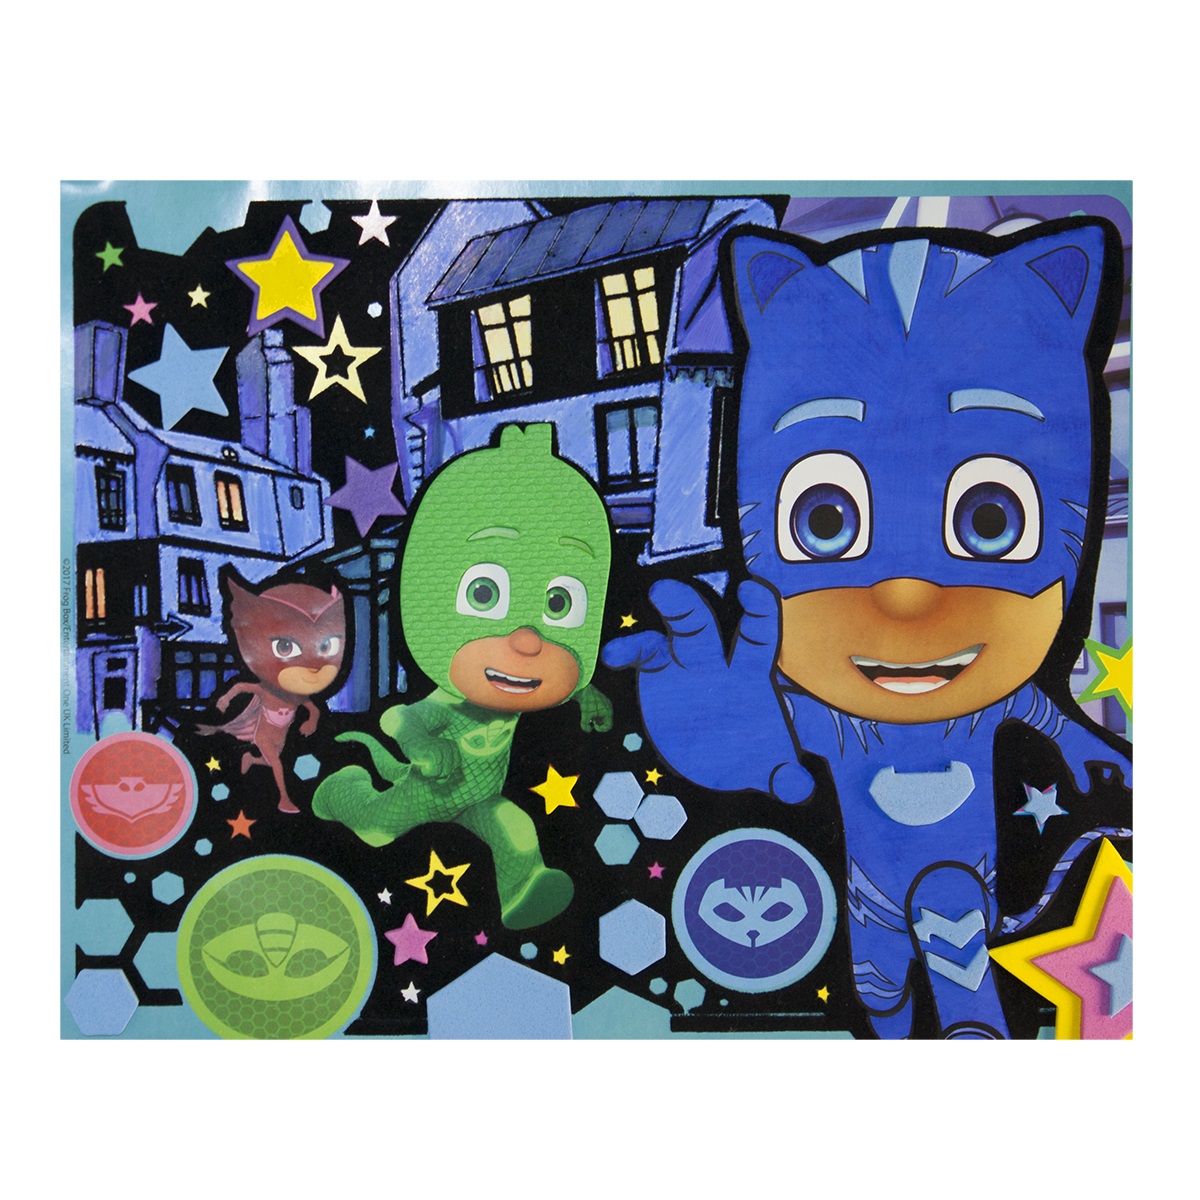 Аппликация и раскраска на бархате - PJ Masks Отважные герои  